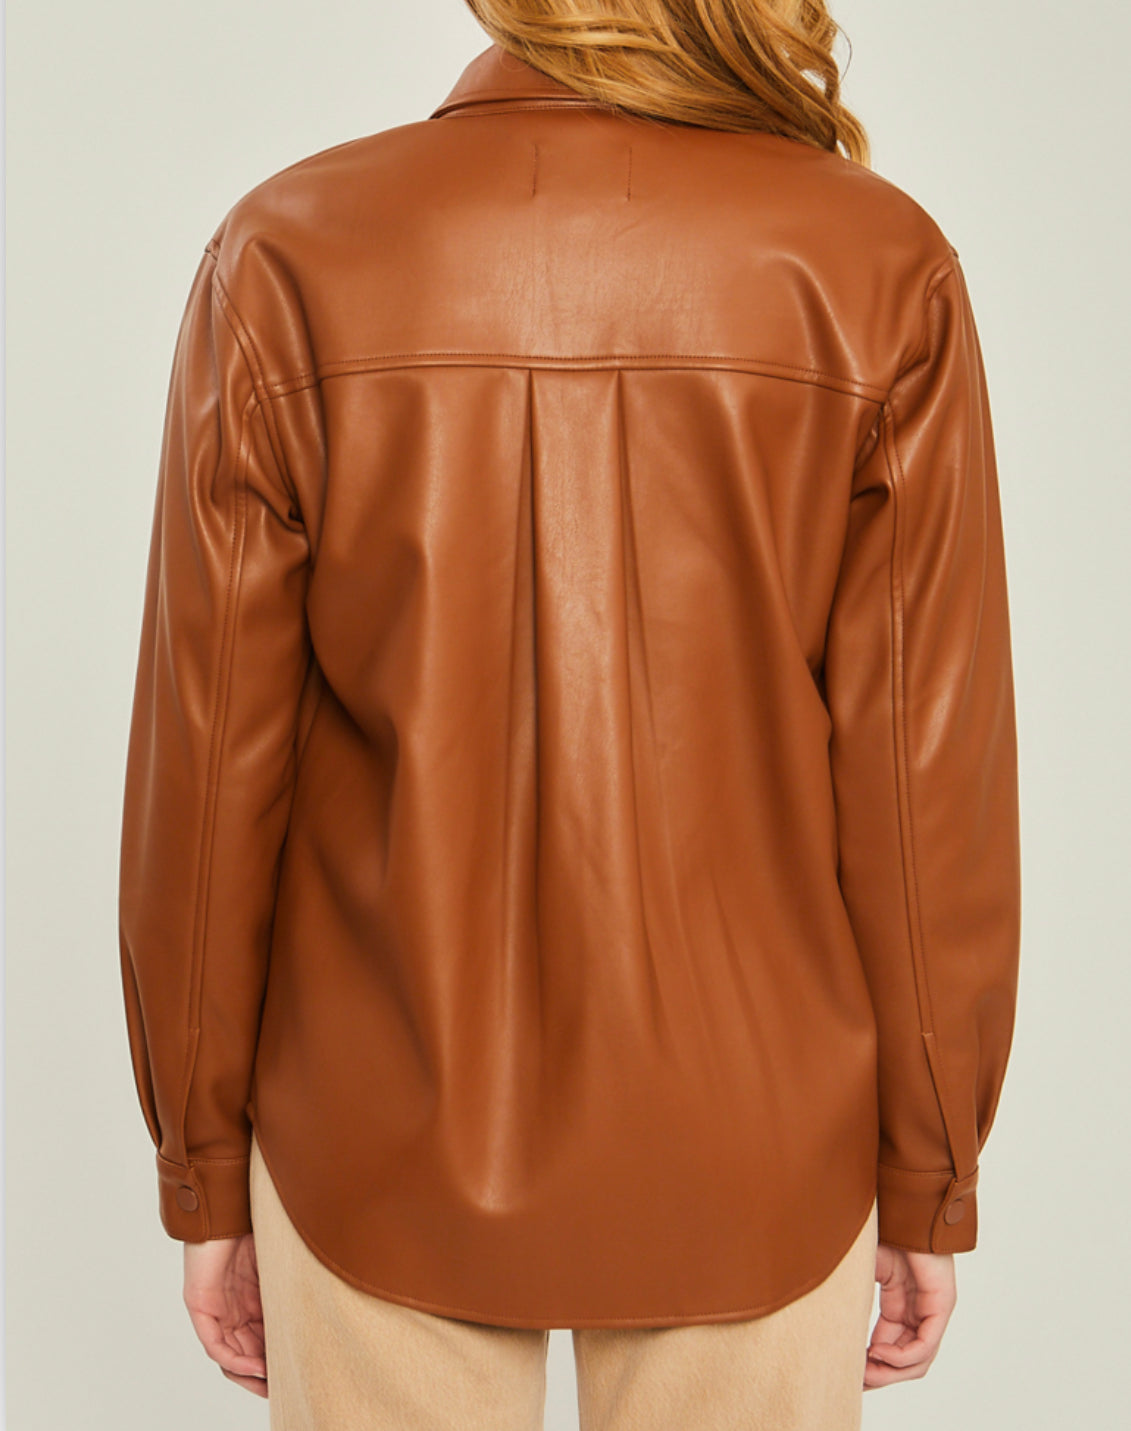 Kendra Leather Shacket (Camel)